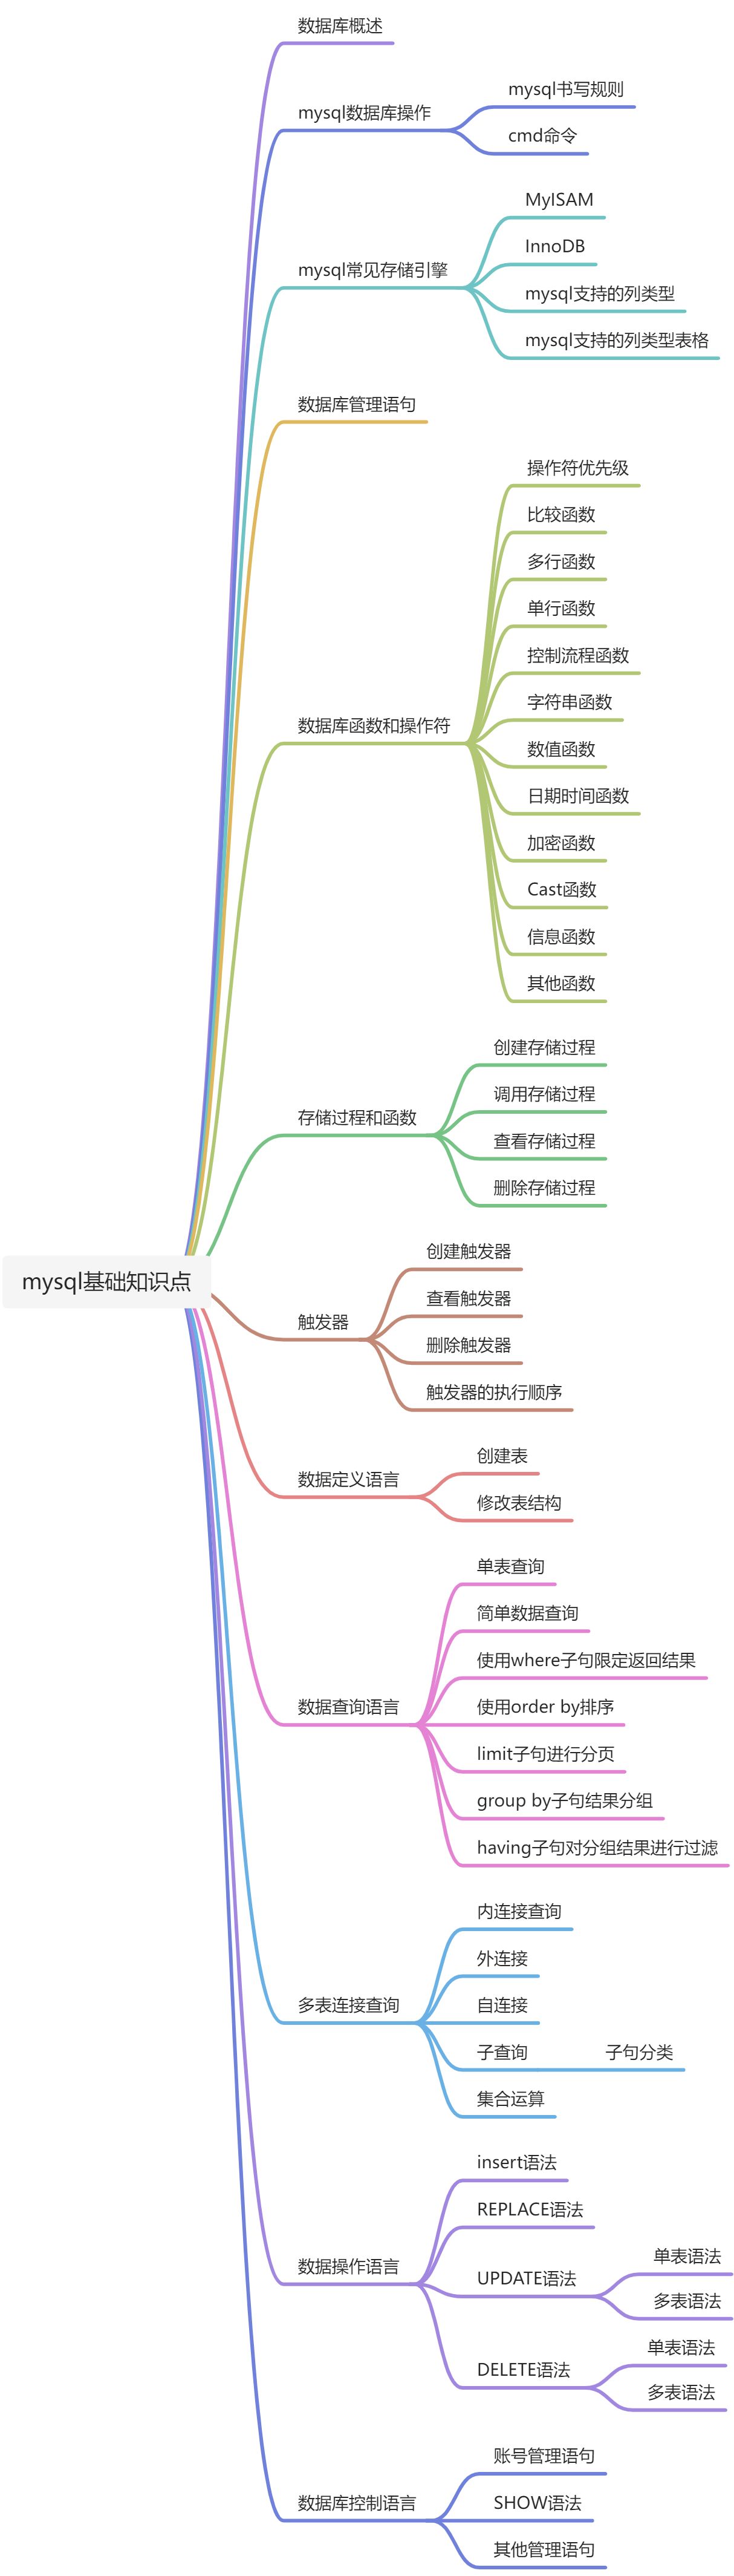 MySql基础知识 - 图1